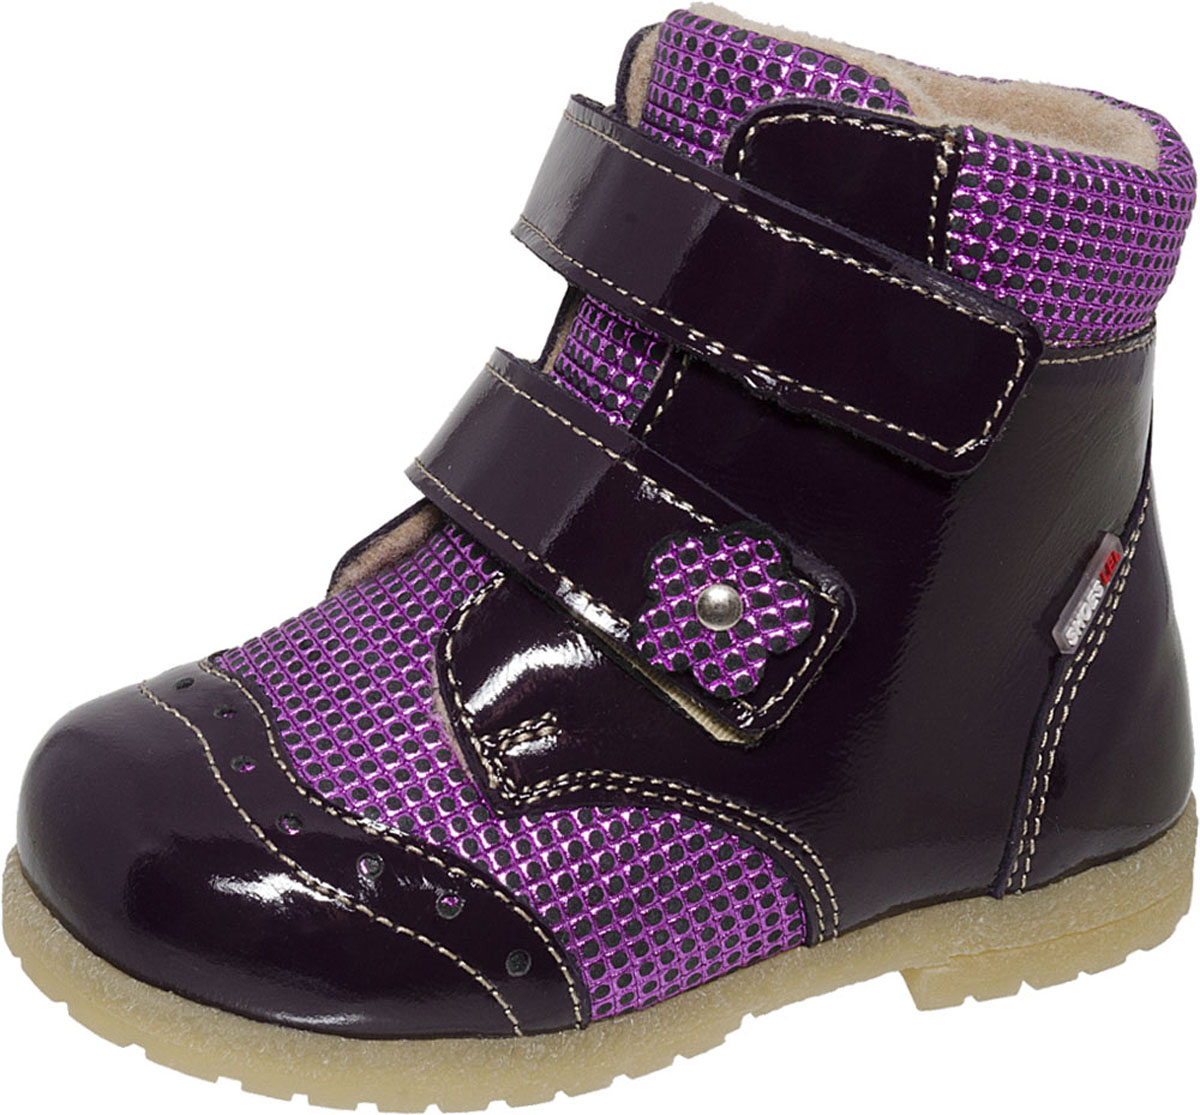 Ботинки для девочки Лель, цвет: фиолетовый. 2-1005. Размер 22